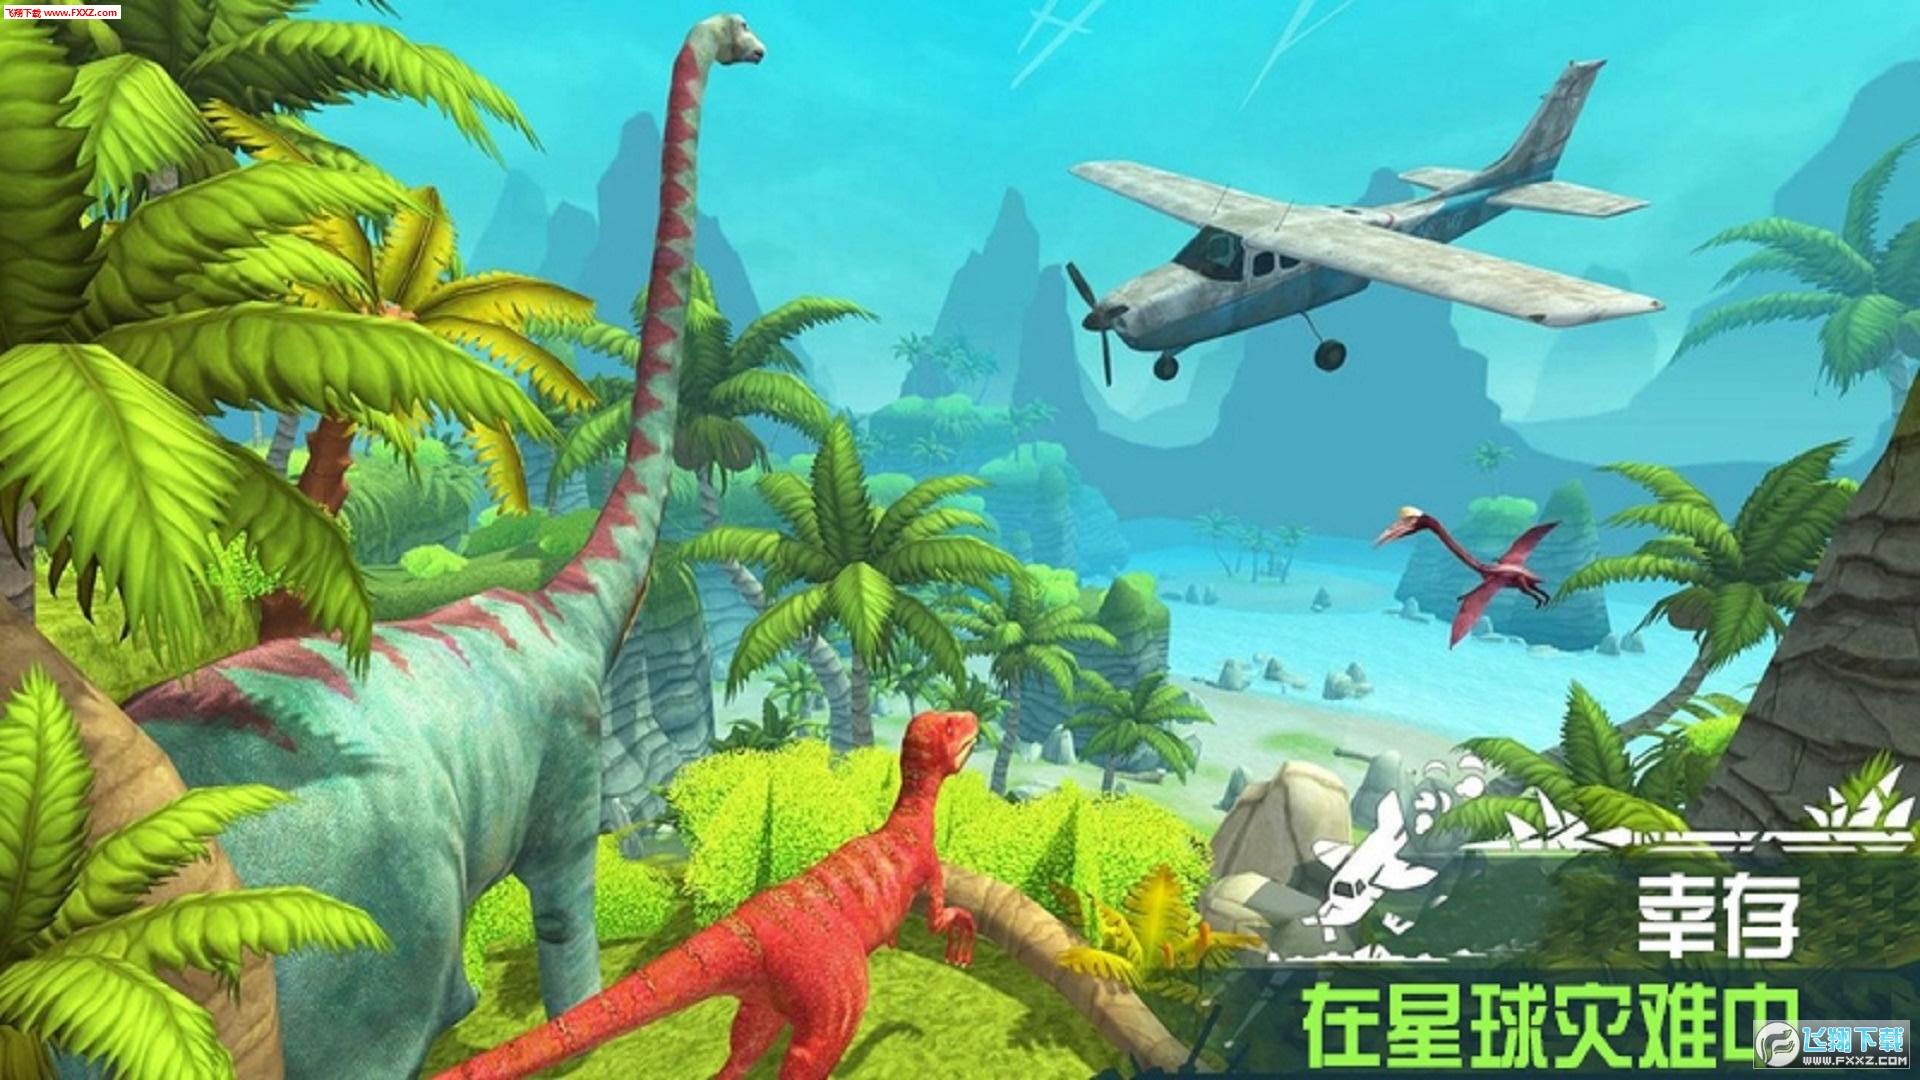 《看游戏恐龙岛》,一个融合了恐龙探险与生存挑战的全新体验